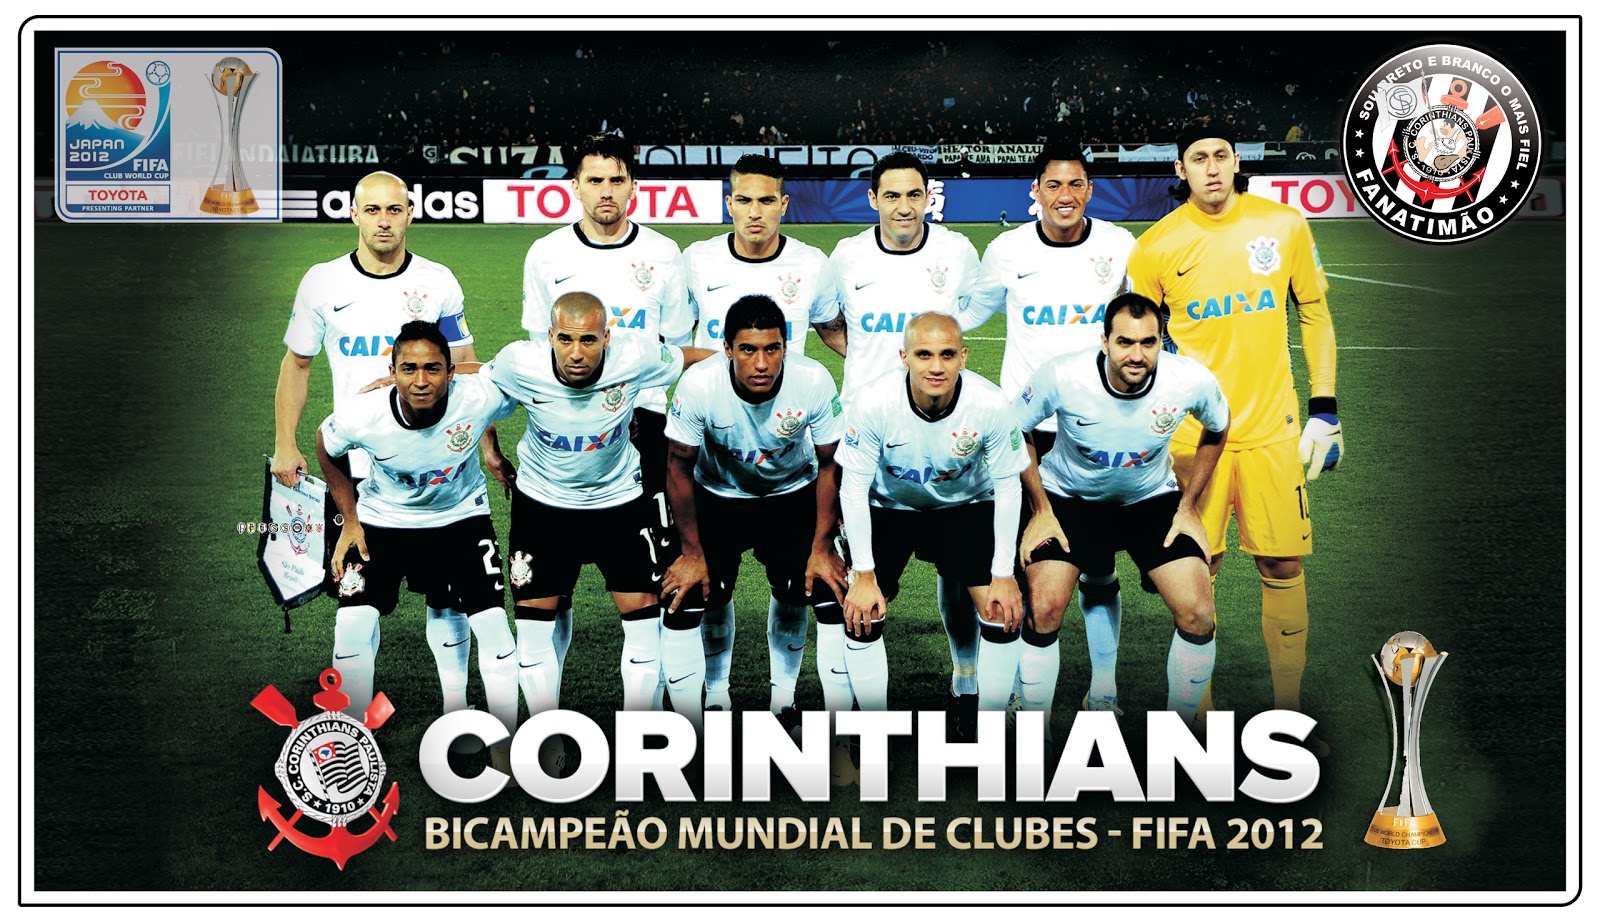 Torcida Organizada Fanatimão - Corinthians: Campeão Mundial de